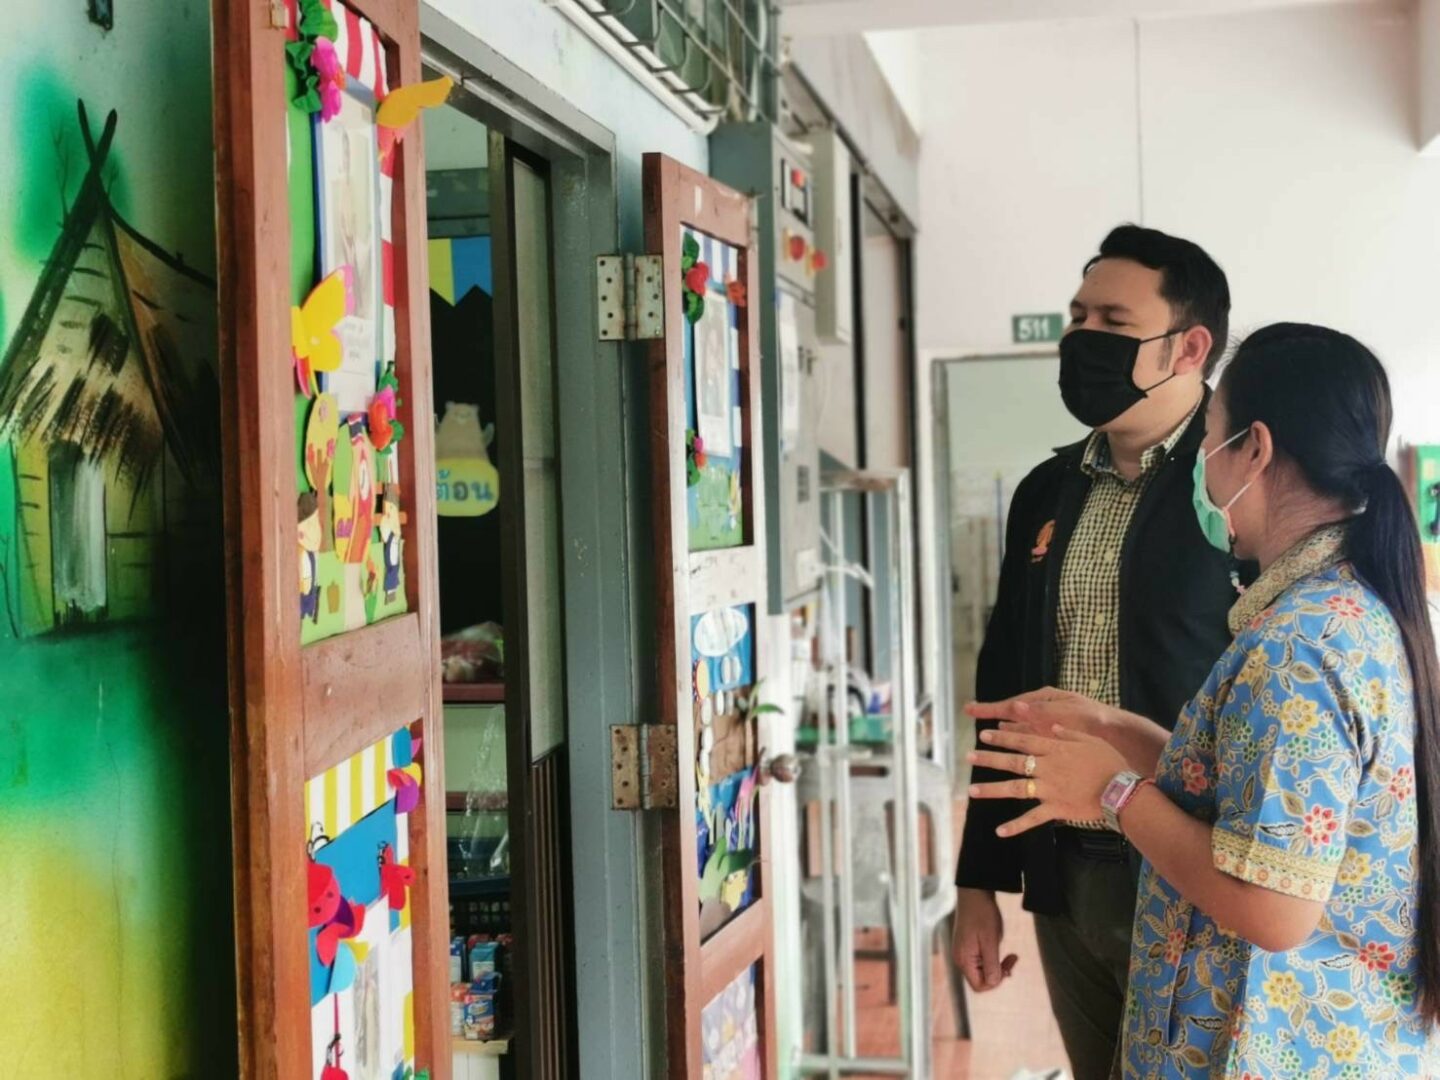 มหาวิทยาลัยวลัยลักษณ์ ร่วมกับ องค์การบริหารส่วนตำบลไทยบุรี เข้าศึกษาดูงานกระบวนการจัดการเรียนการสอนระดับปฐมวัยโรงเรียนต้นแบบหลักสูตร High Scopeระดับประเทศ ณ โรงเรียนสมานคุณวิทยาทาน จ.สงขลา